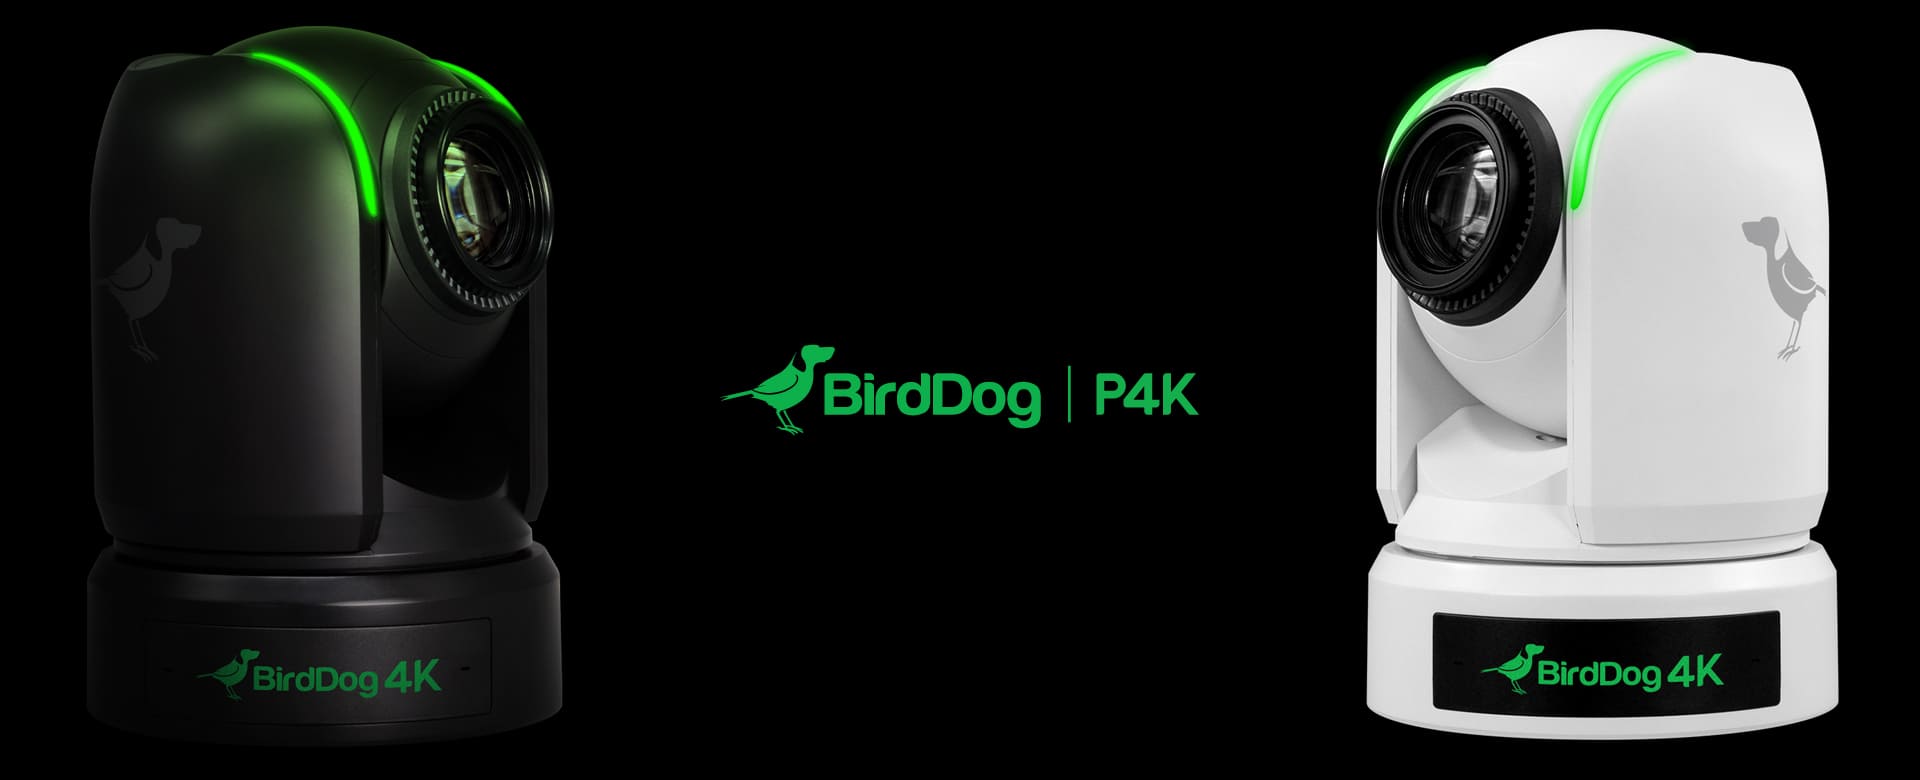 BirdDog P4K